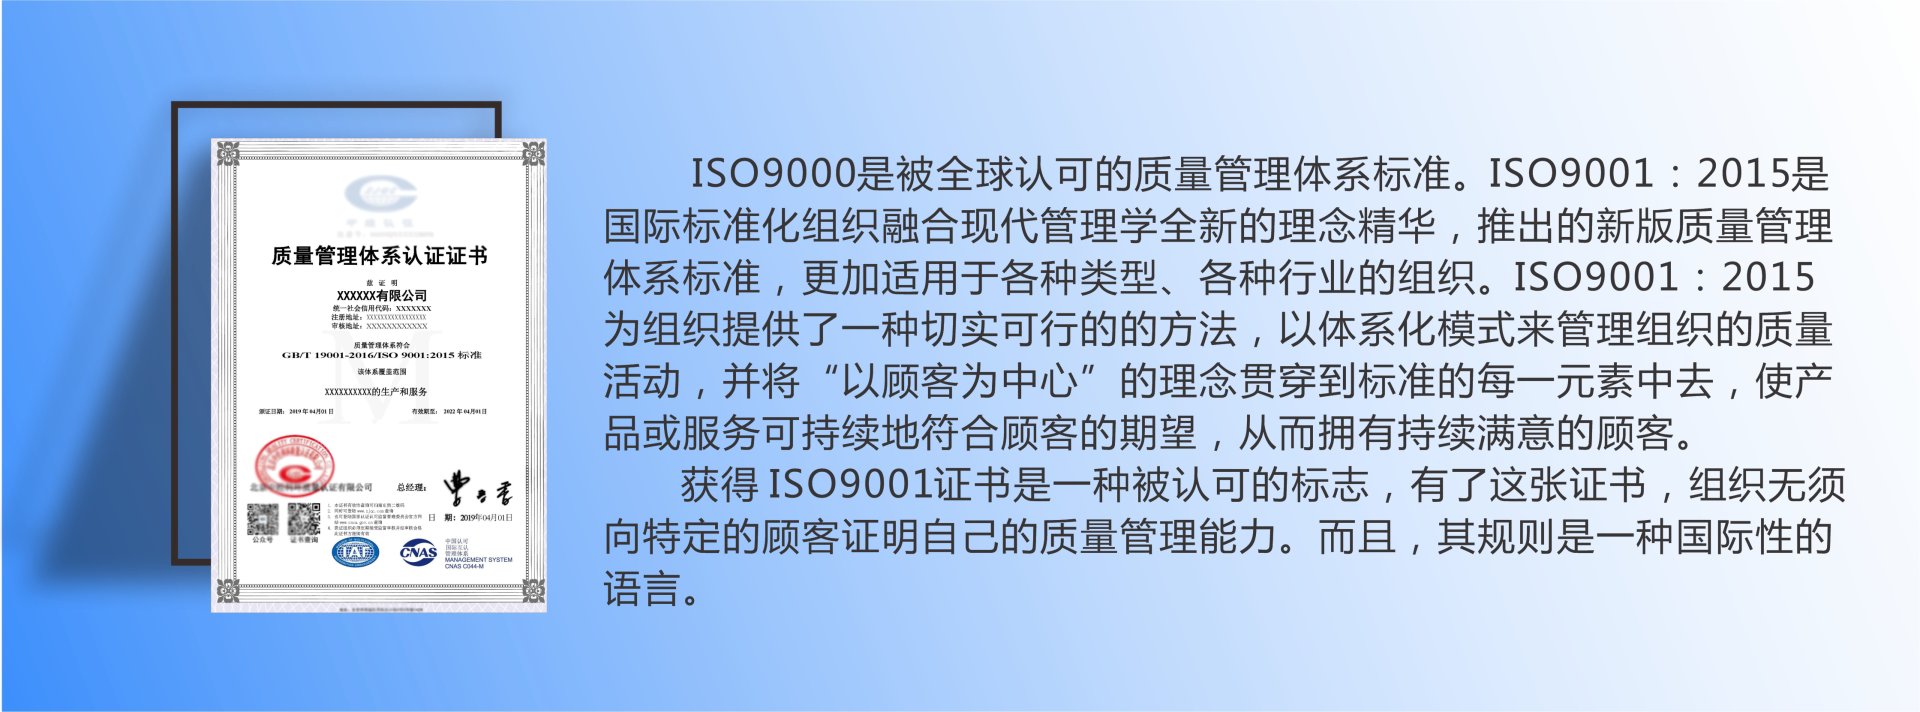 郫都区公司iso9000认证咨询 iso9000咨询认证公司 	 iso9000质量体系认证价格示例图2